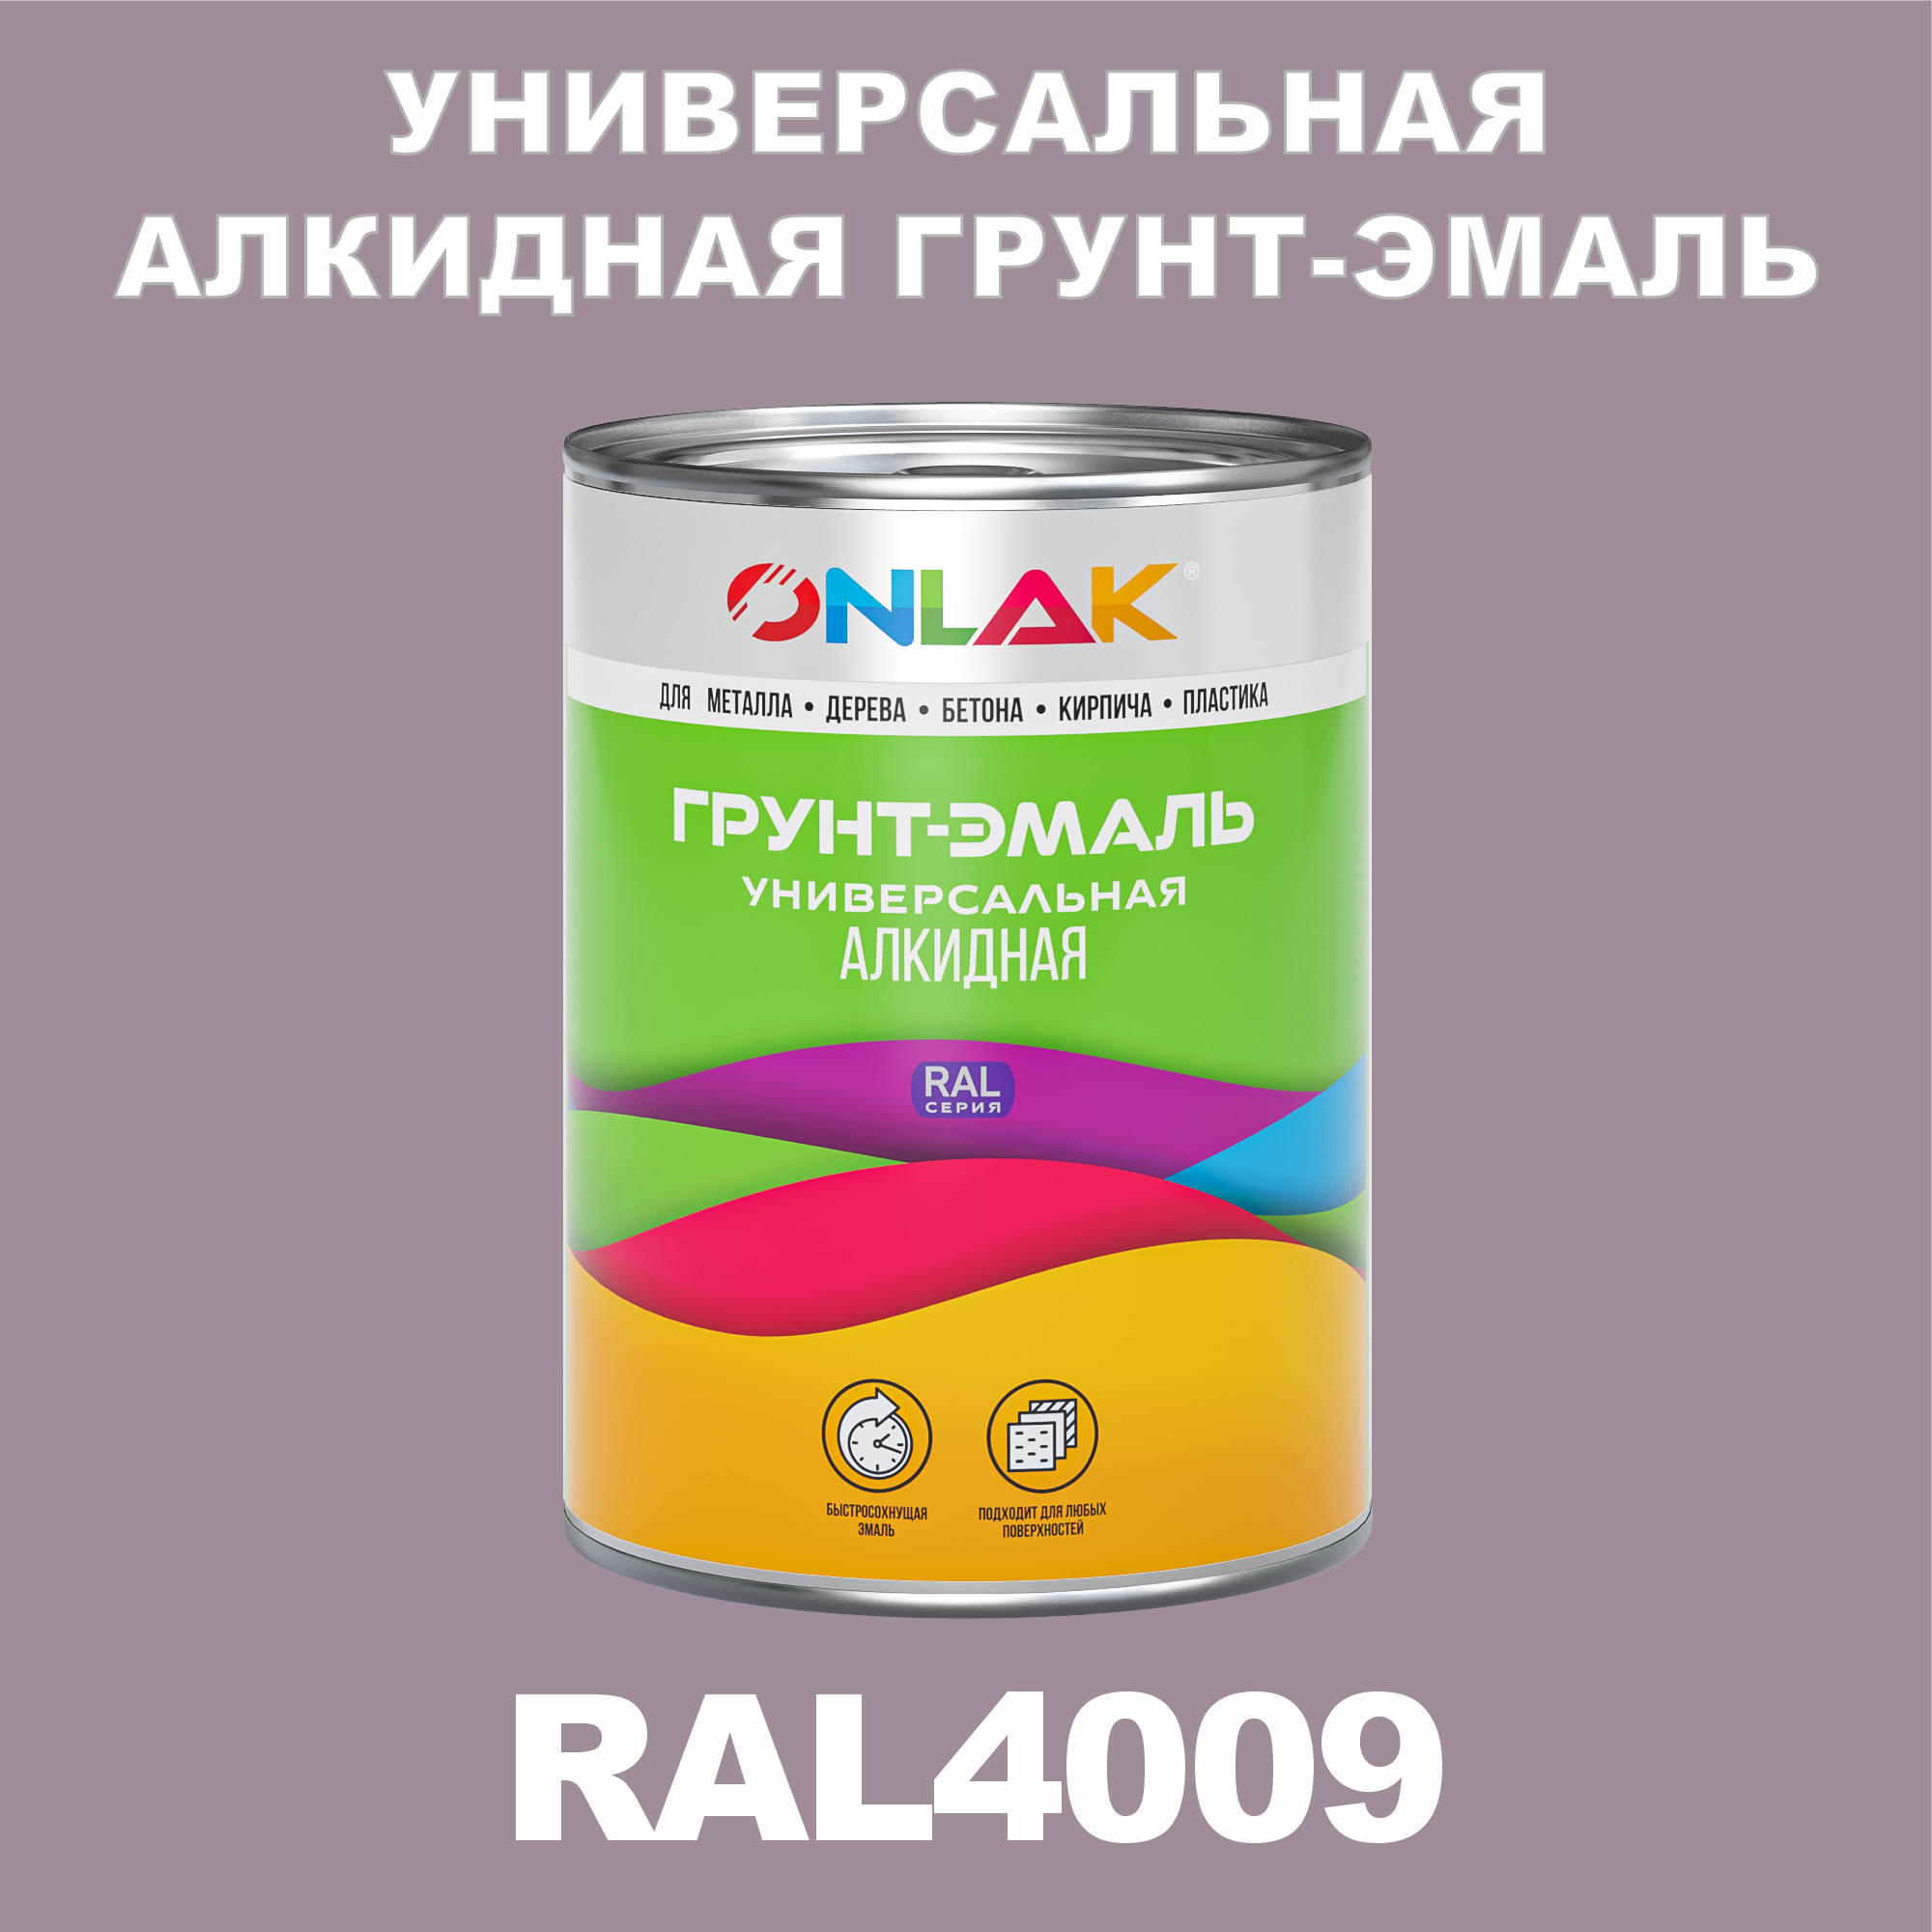 Грунт-эмаль ONLAK 1К RAL4009 антикоррозионная алкидная по металлу по ржавчине 1 кг антикоррозионная грунт эмаль onlak ral 4003 фиолетовый 542 мл